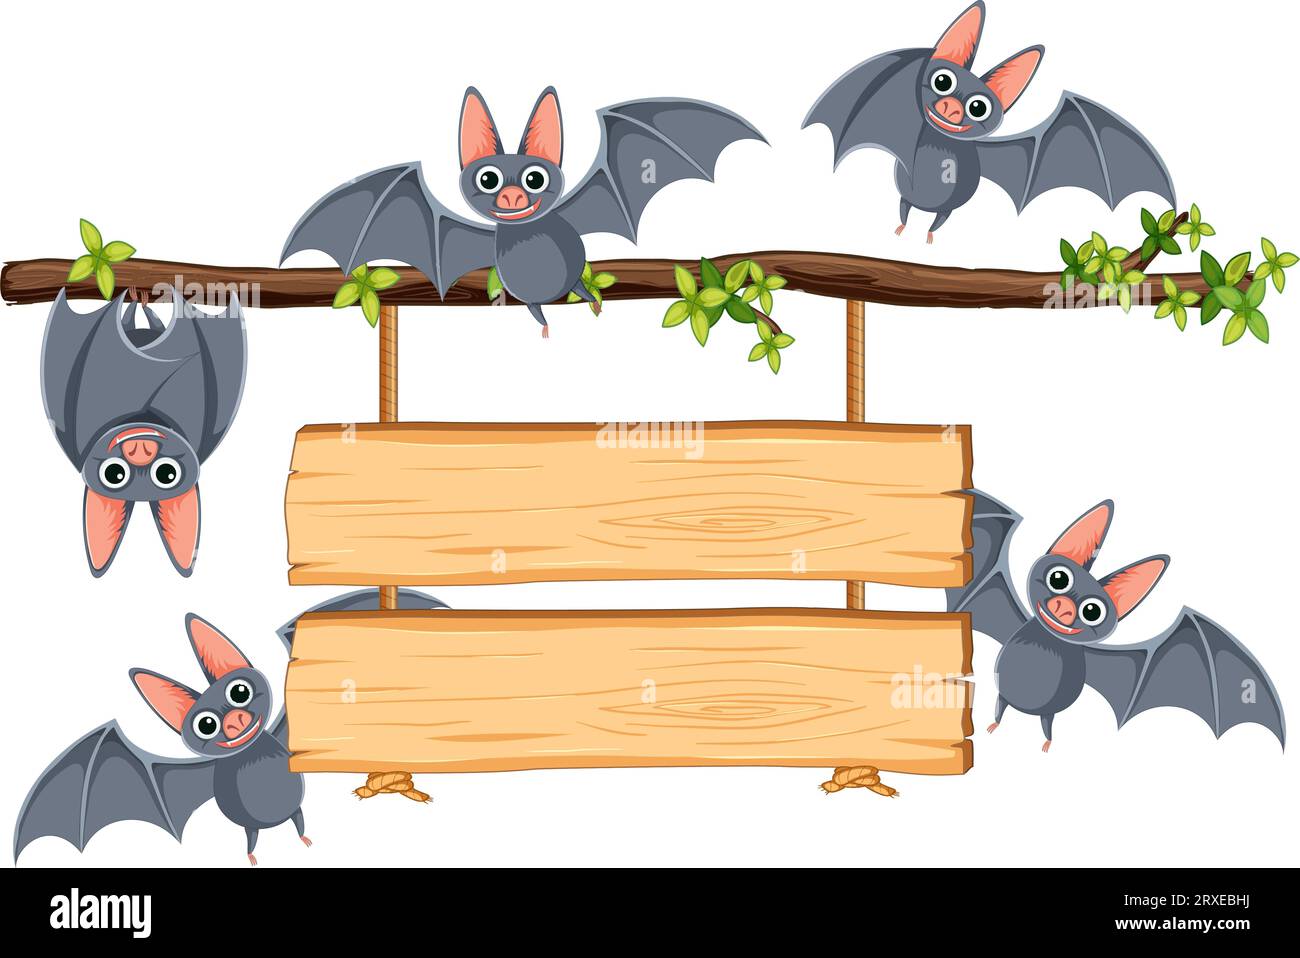 Illustrazione di un cartone animato vettoriale di pipistrelli in volo e appollaiati su un ramo di albero con un cartello di legno appeso Illustrazione Vettoriale